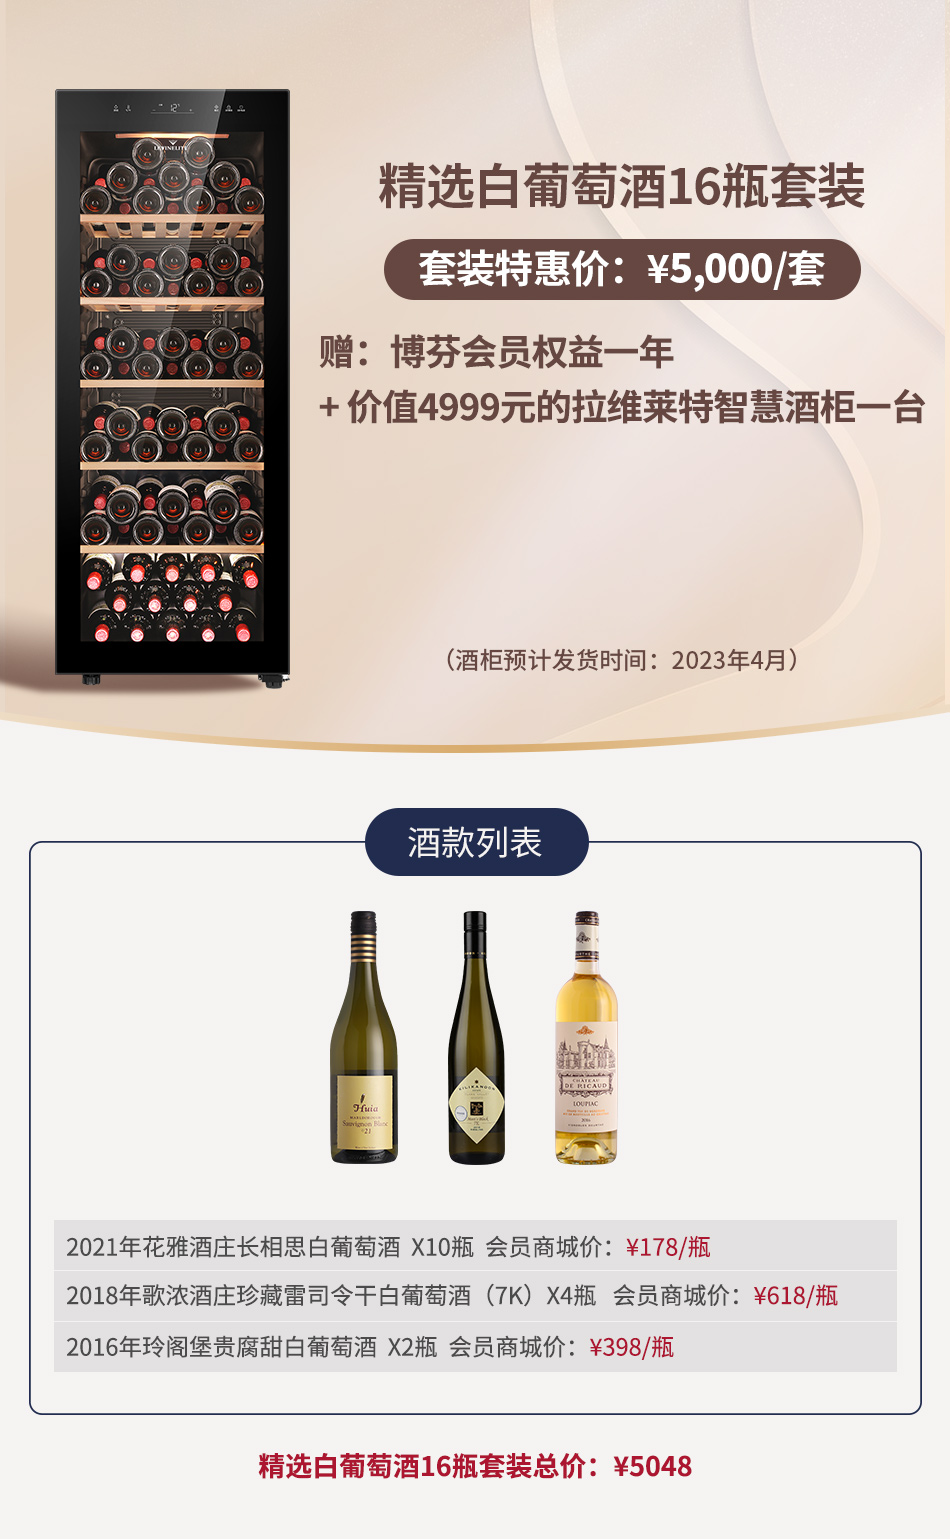 【套装E】精选白葡萄酒16瓶套装 赠：价值4999元的拉维莱特智慧酒柜一台+博芬会员权益一年